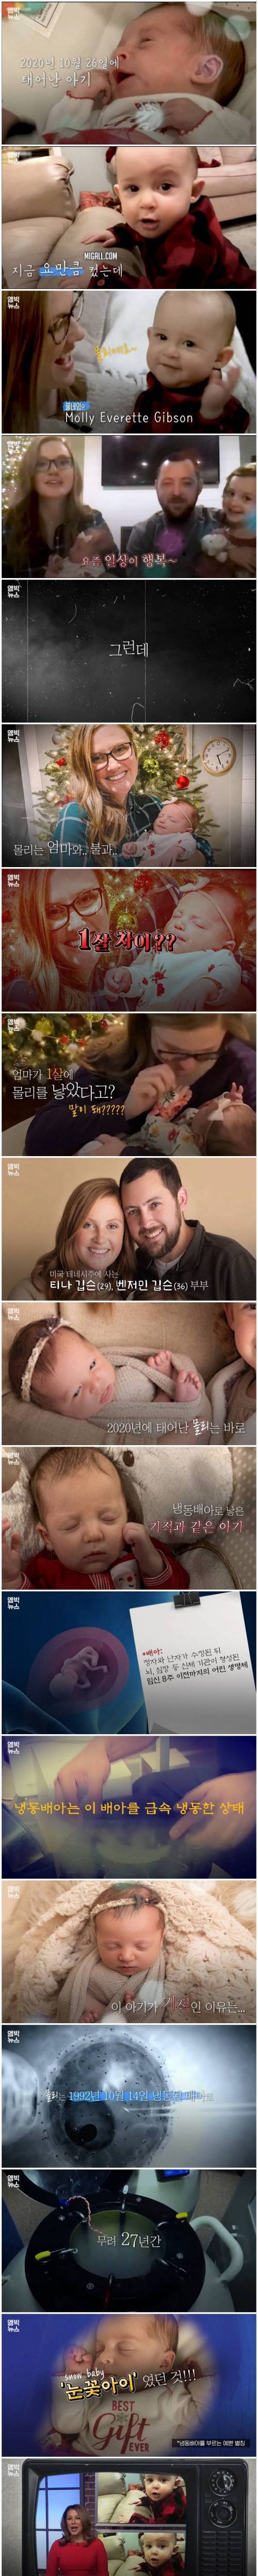 [스압] 27년 보관된 냉동배아로 태어난 아기.jpg